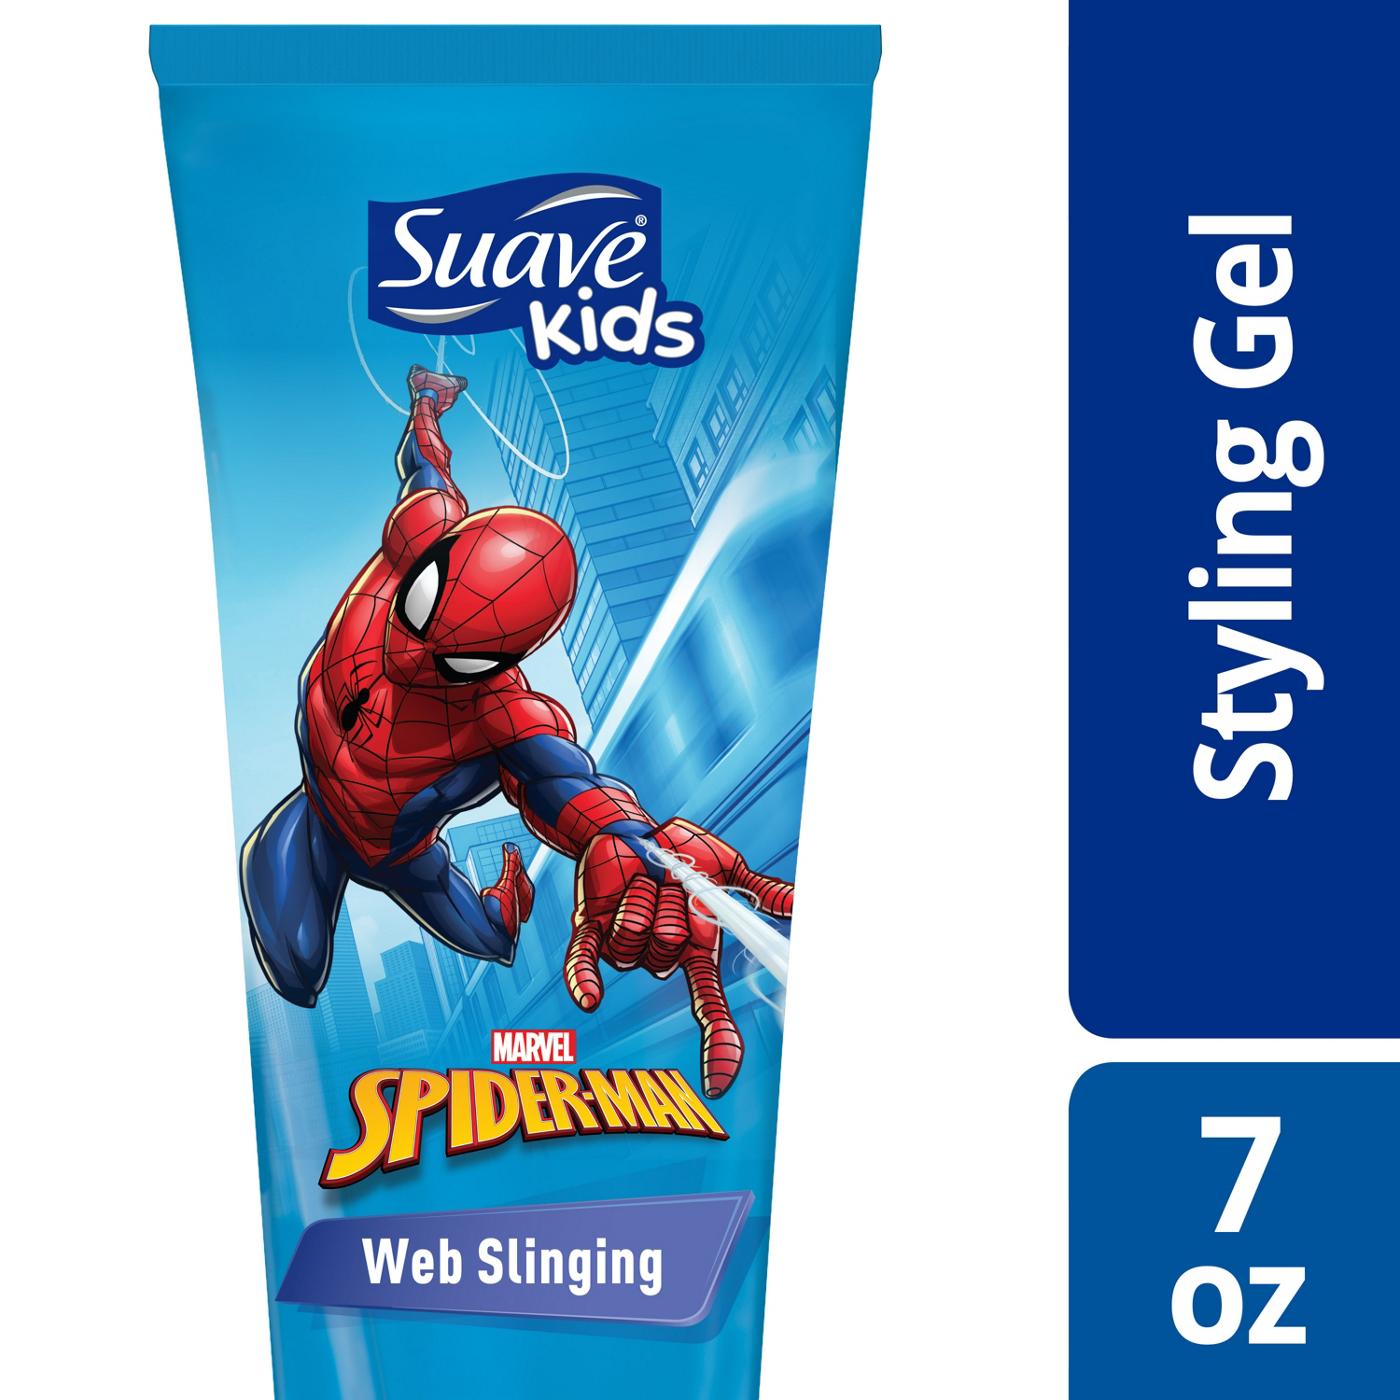 Suave Kids Spider-Man Web Slinging Hair Gel; image 3 of 3